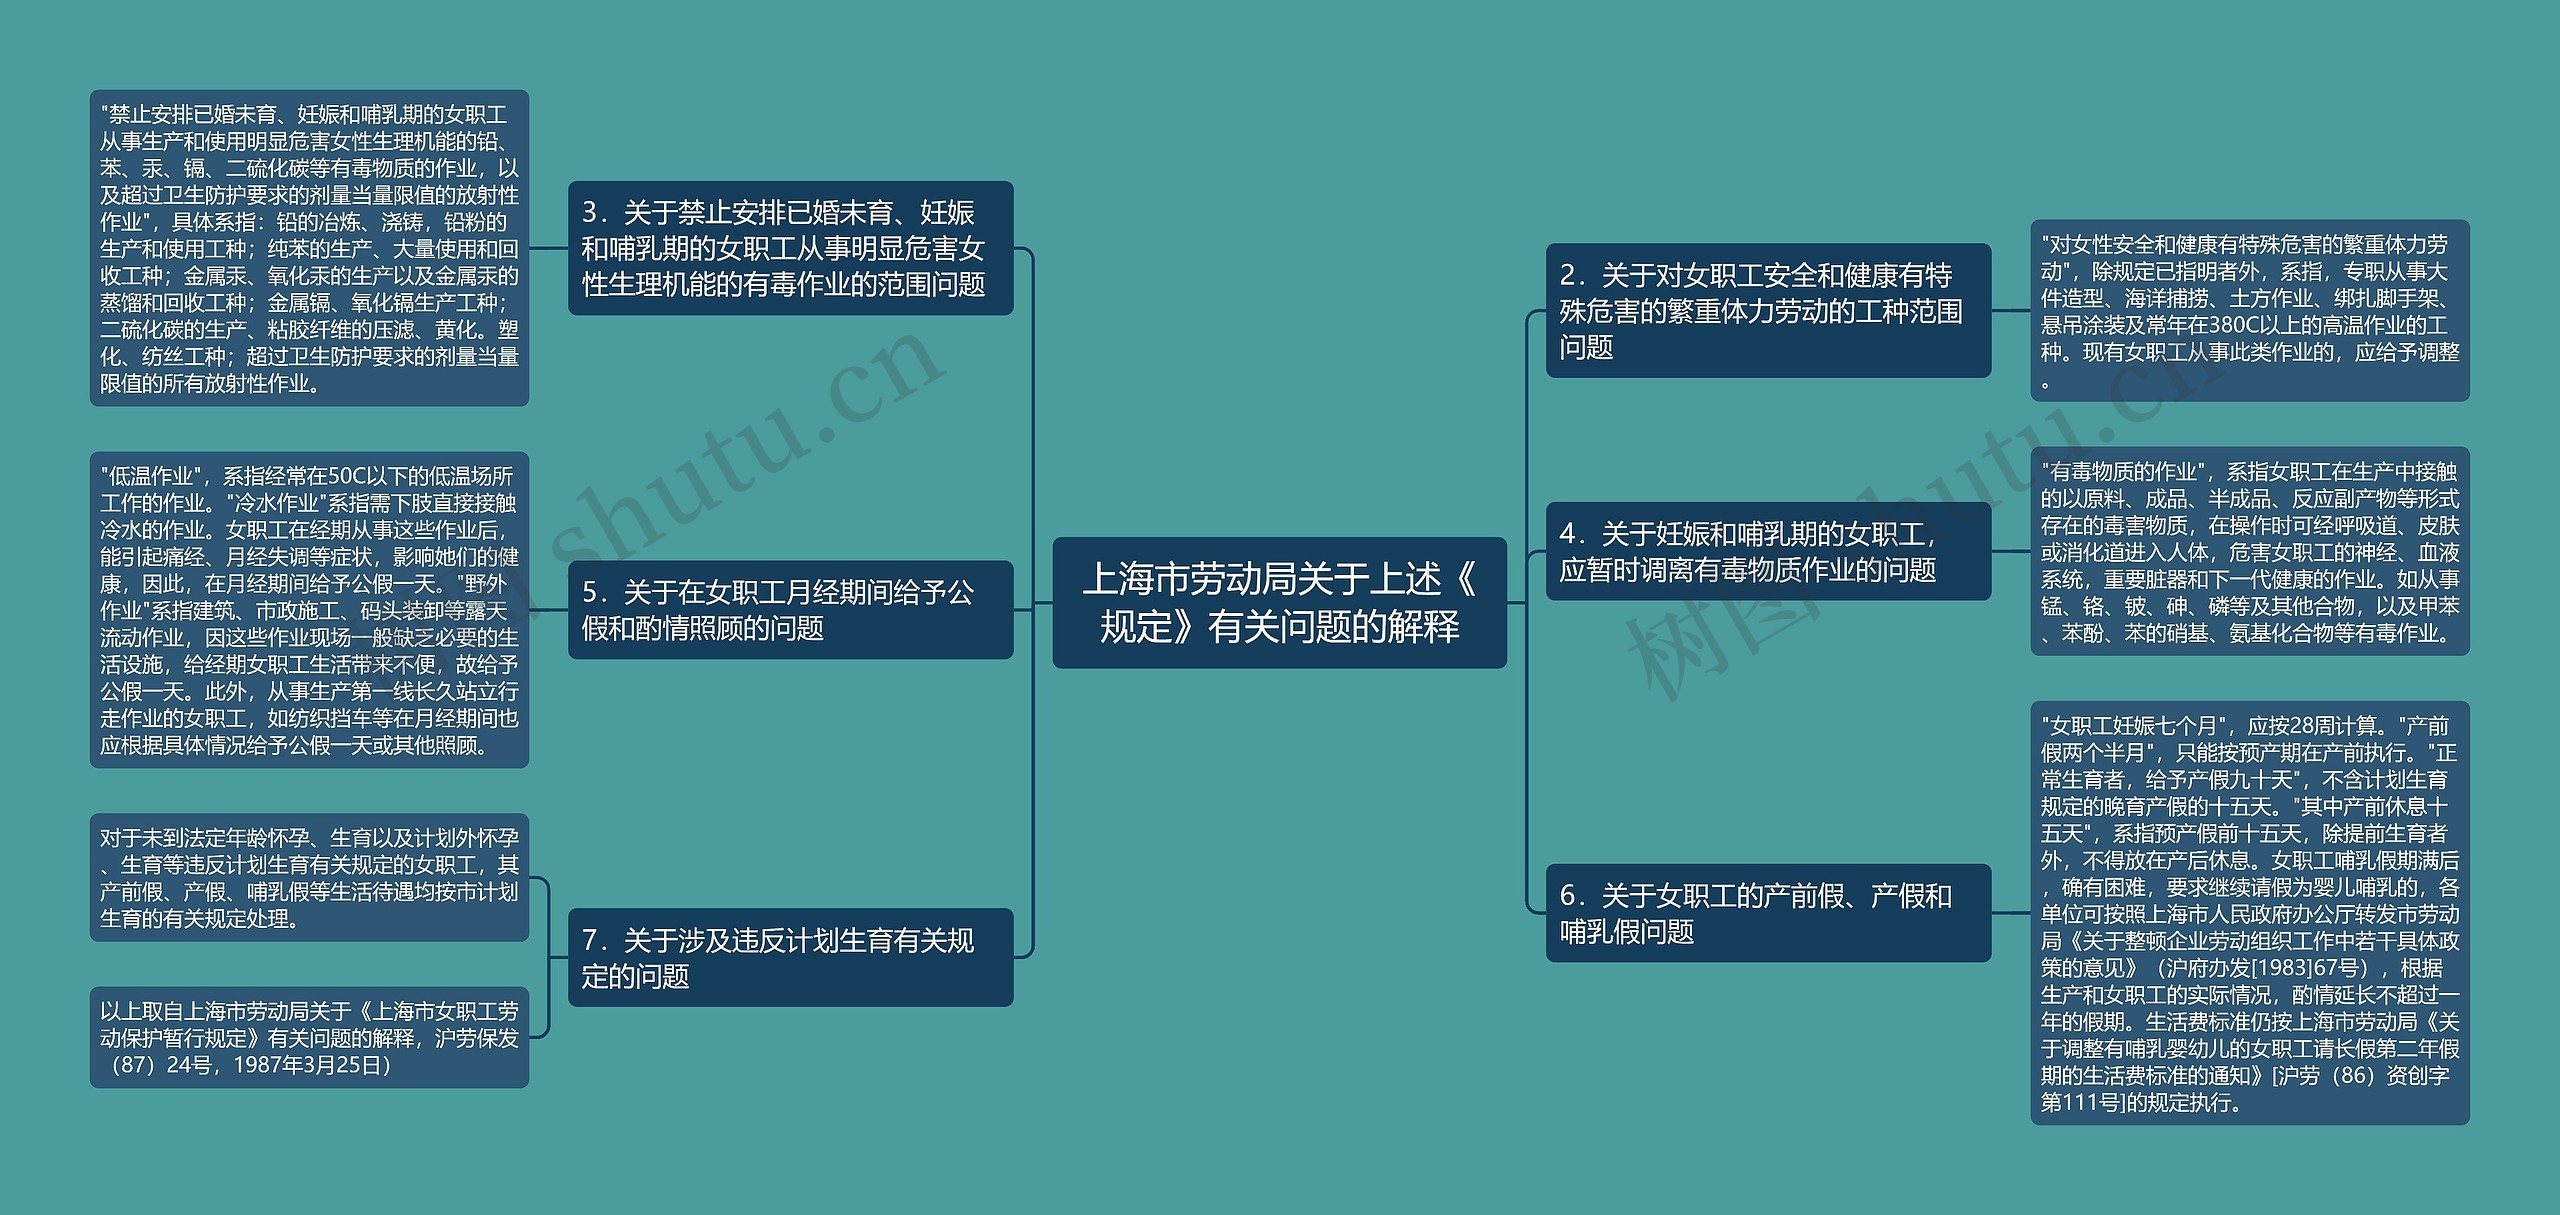 上海市劳动局关于上述《规定》有关问题的解释思维导图